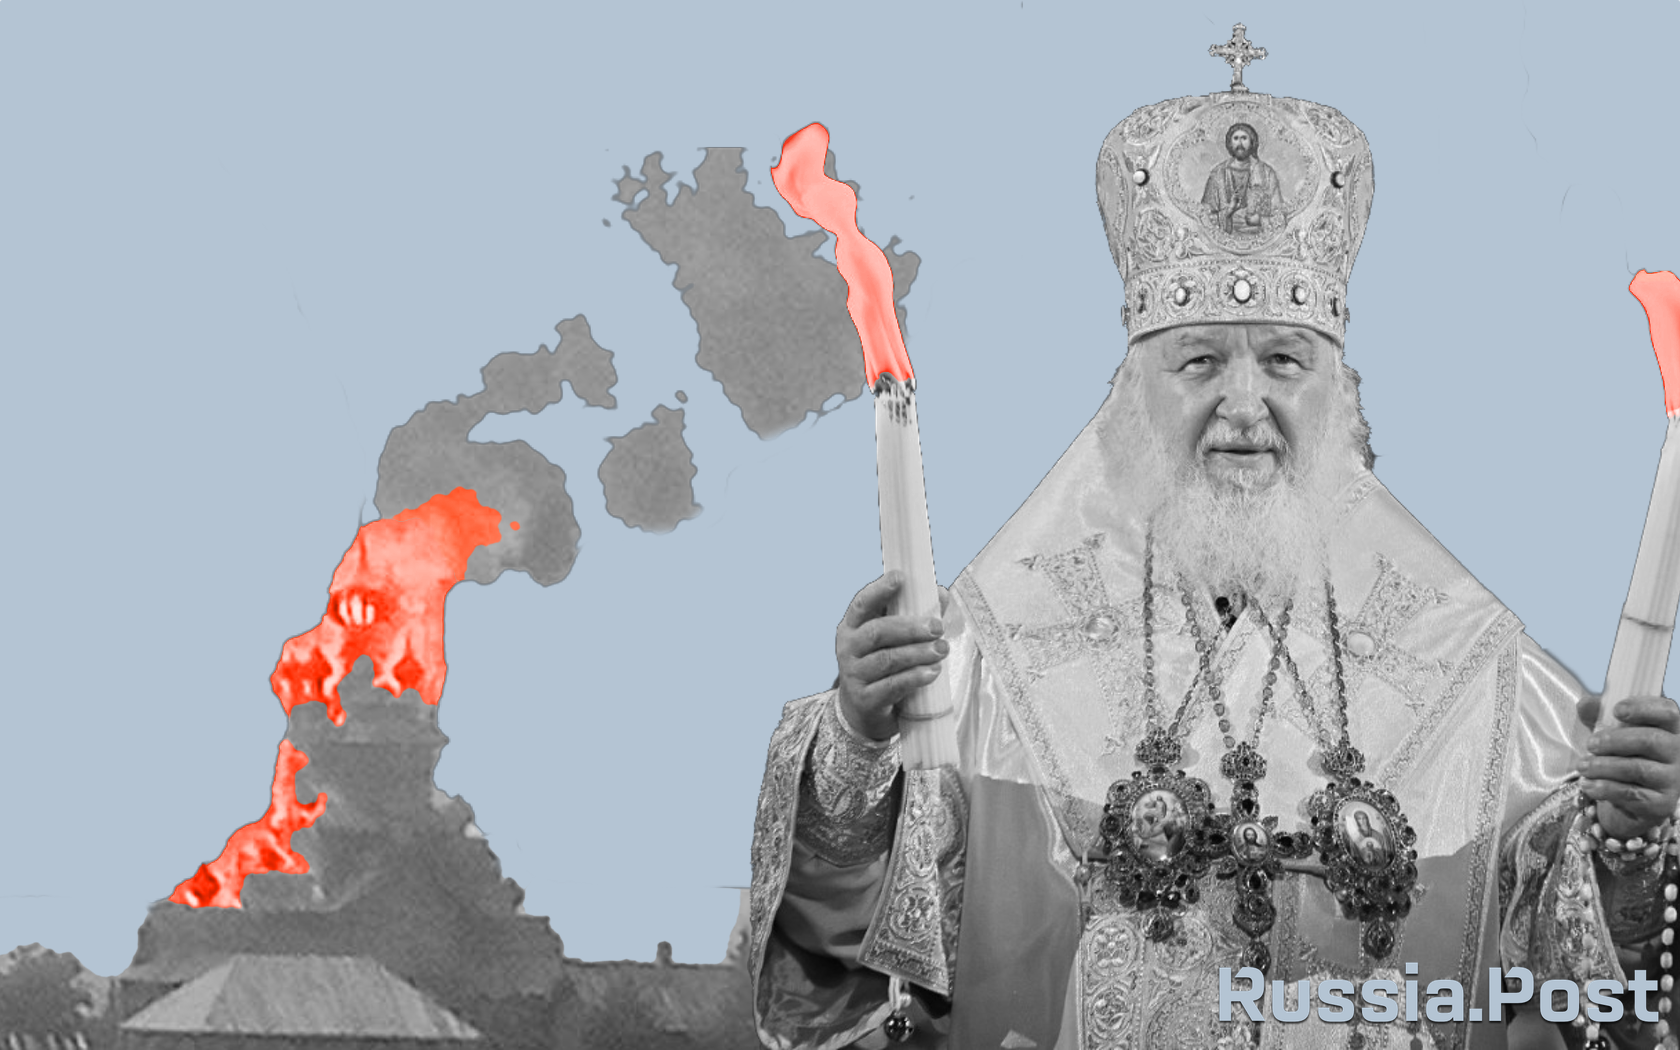 Іззет Енюнлю: Москва і Релігія